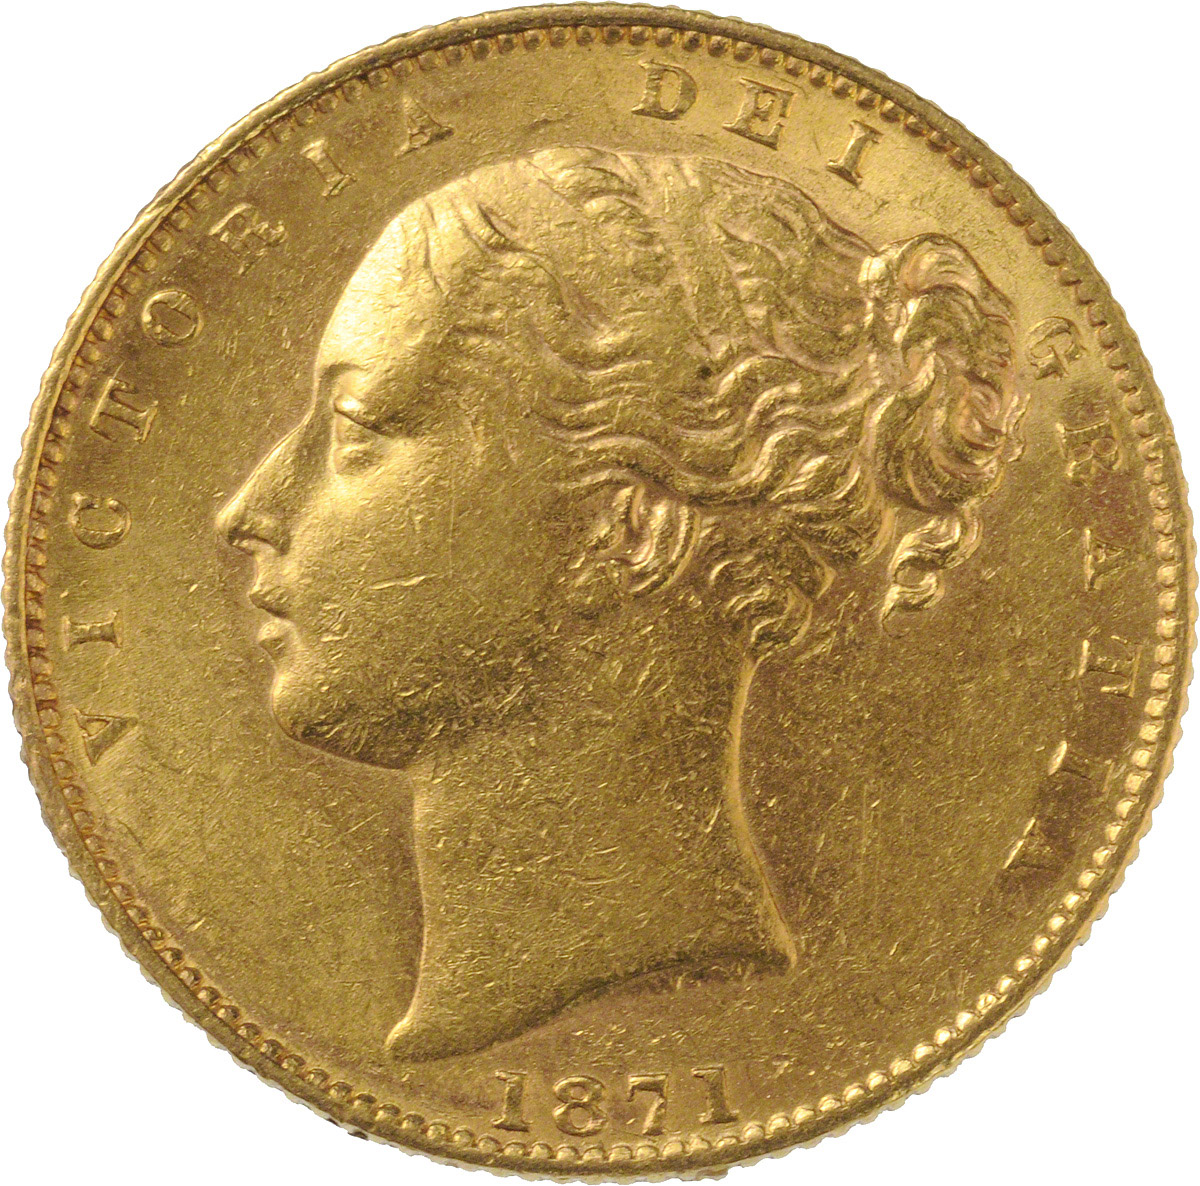 1871 Βικτώρια – Θυρεός (Νομισματοκοπείο Σίδνεϊ)